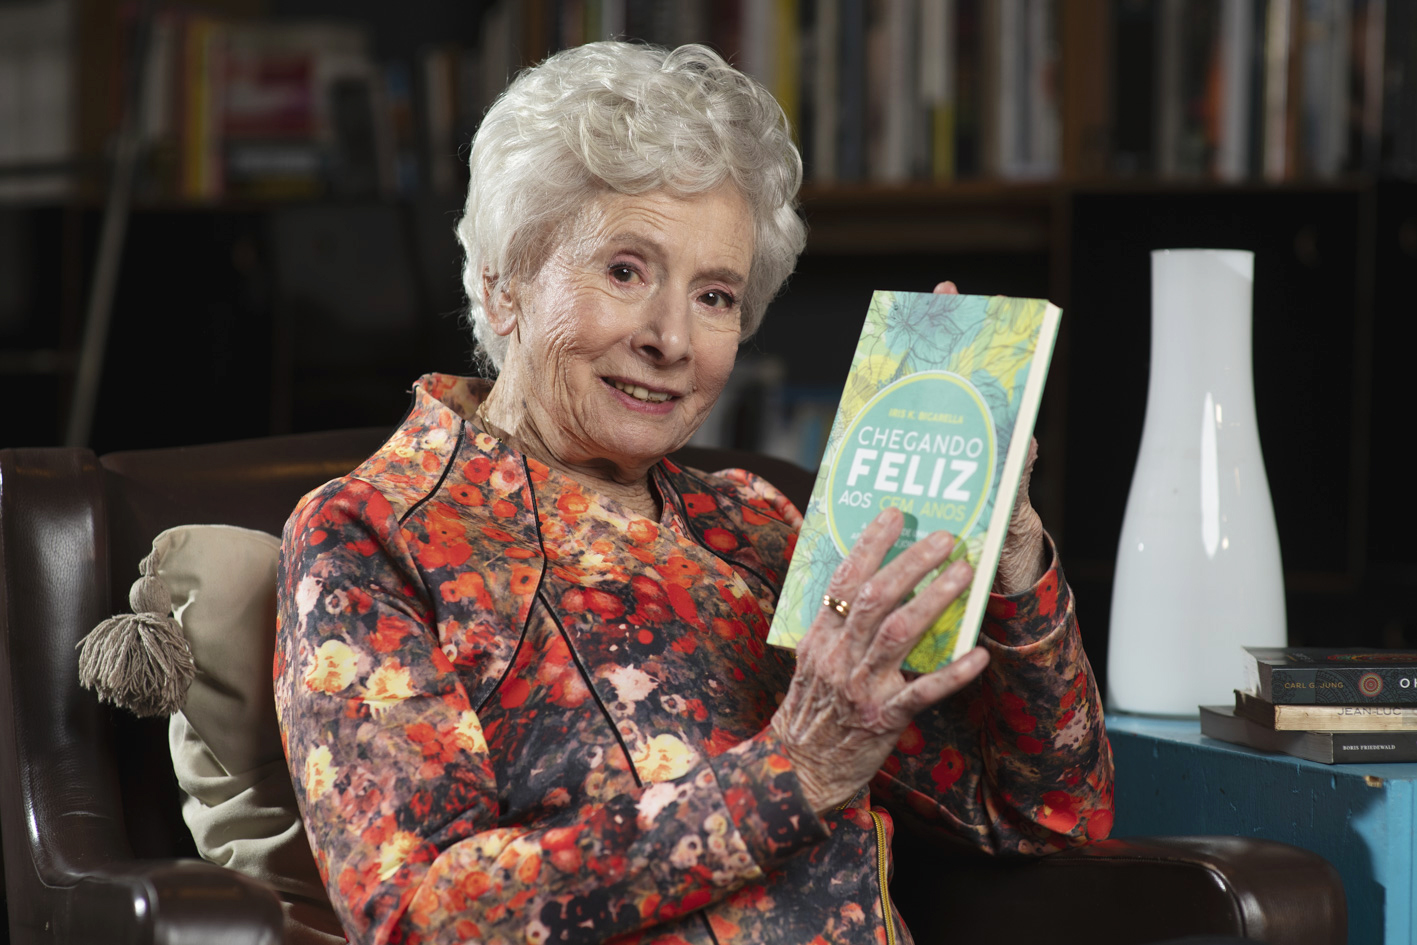 Aos 100 anos, escritora faz sucesso com livro que ensina a envelhecer bem